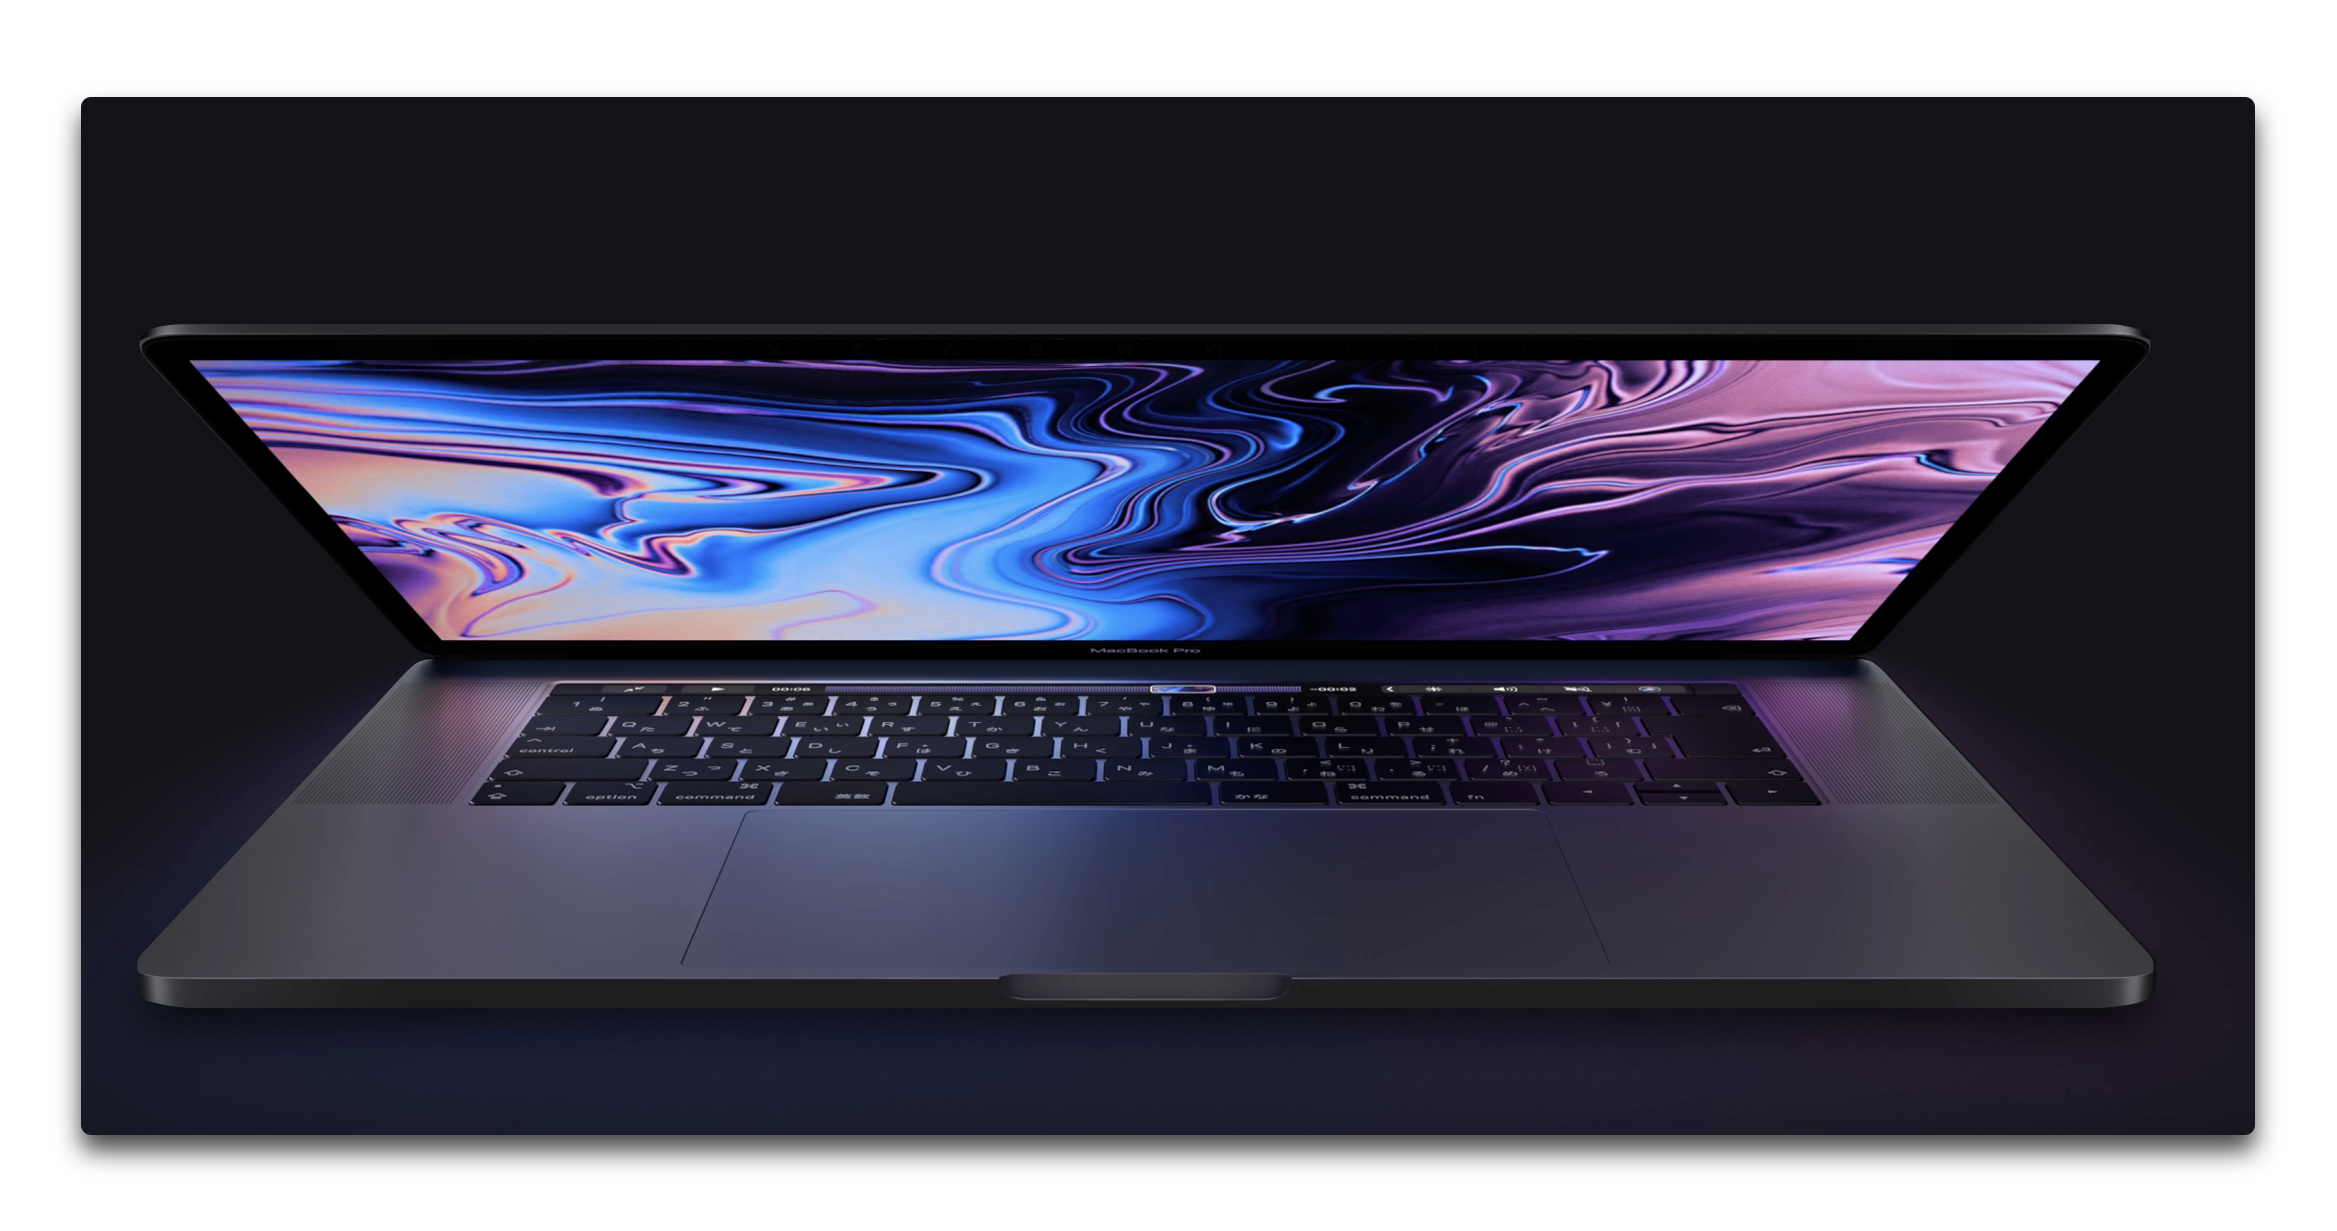 Appleの 2018 MacBook Proのレビューでベンチマークも、MacBook Proの”Pro”を強調